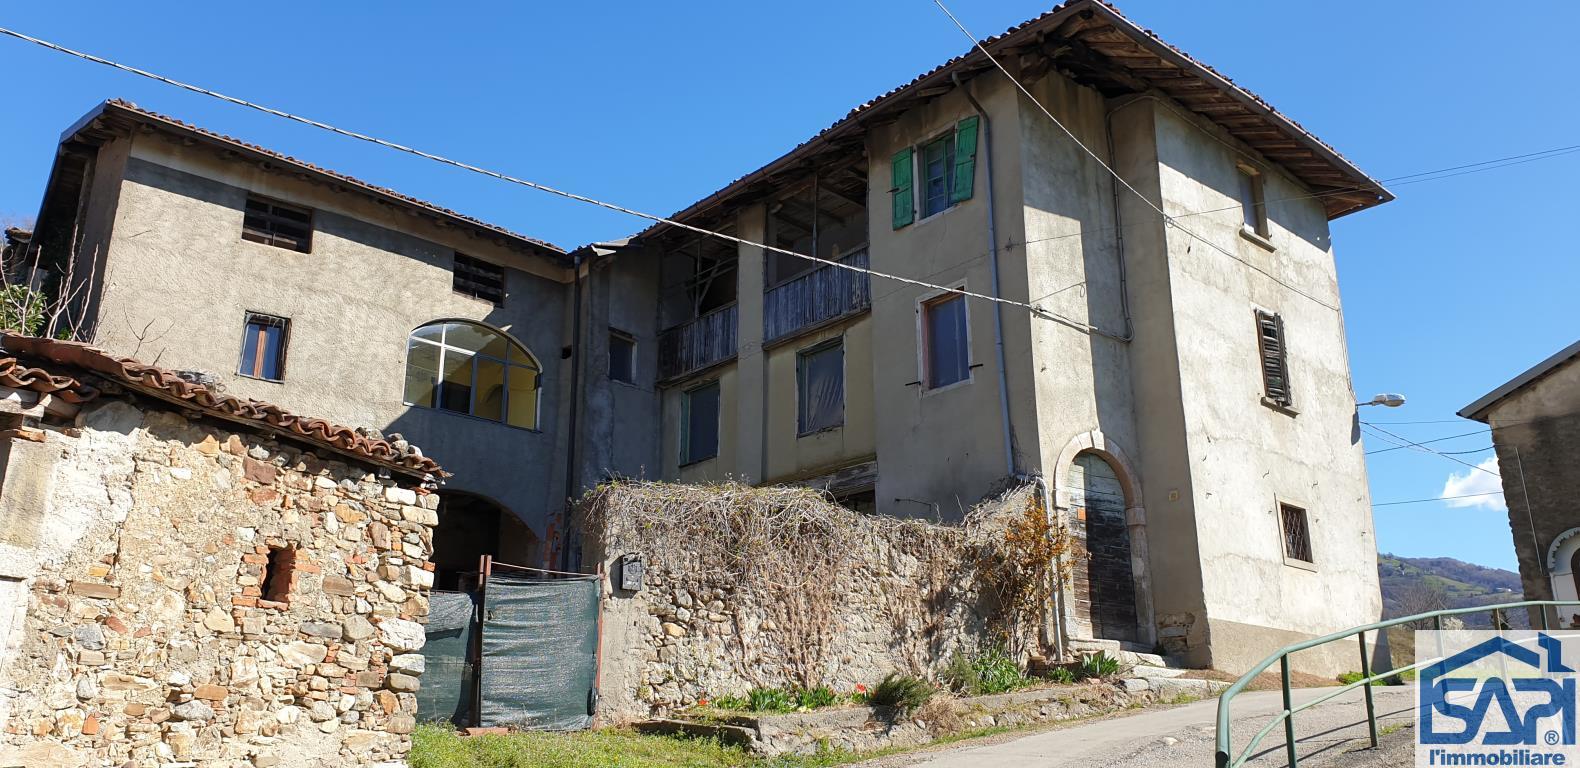 Rustico / Casale in vendita a Cisano Bergamasco, 17 locali, prezzo € 240.000 | PortaleAgenzieImmobiliari.it